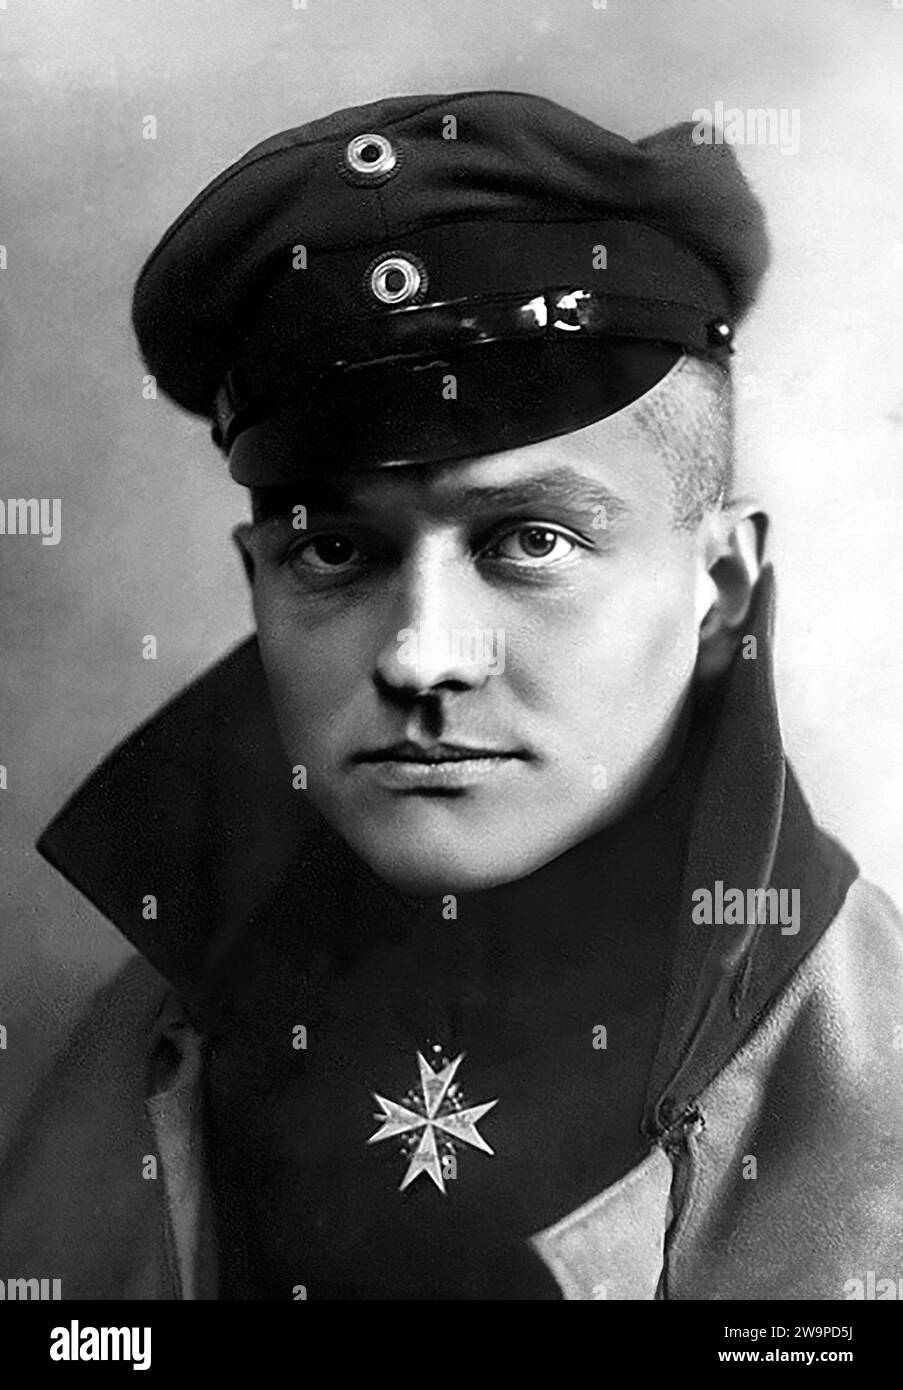 Manfred von Richthofen. Portrait of the German air ace, Manfred Albrecht Freiherr von Richthofen (1892-1918), known in English as Baron von Richthofen or the Red Baron, c. 1917 Stock Photo